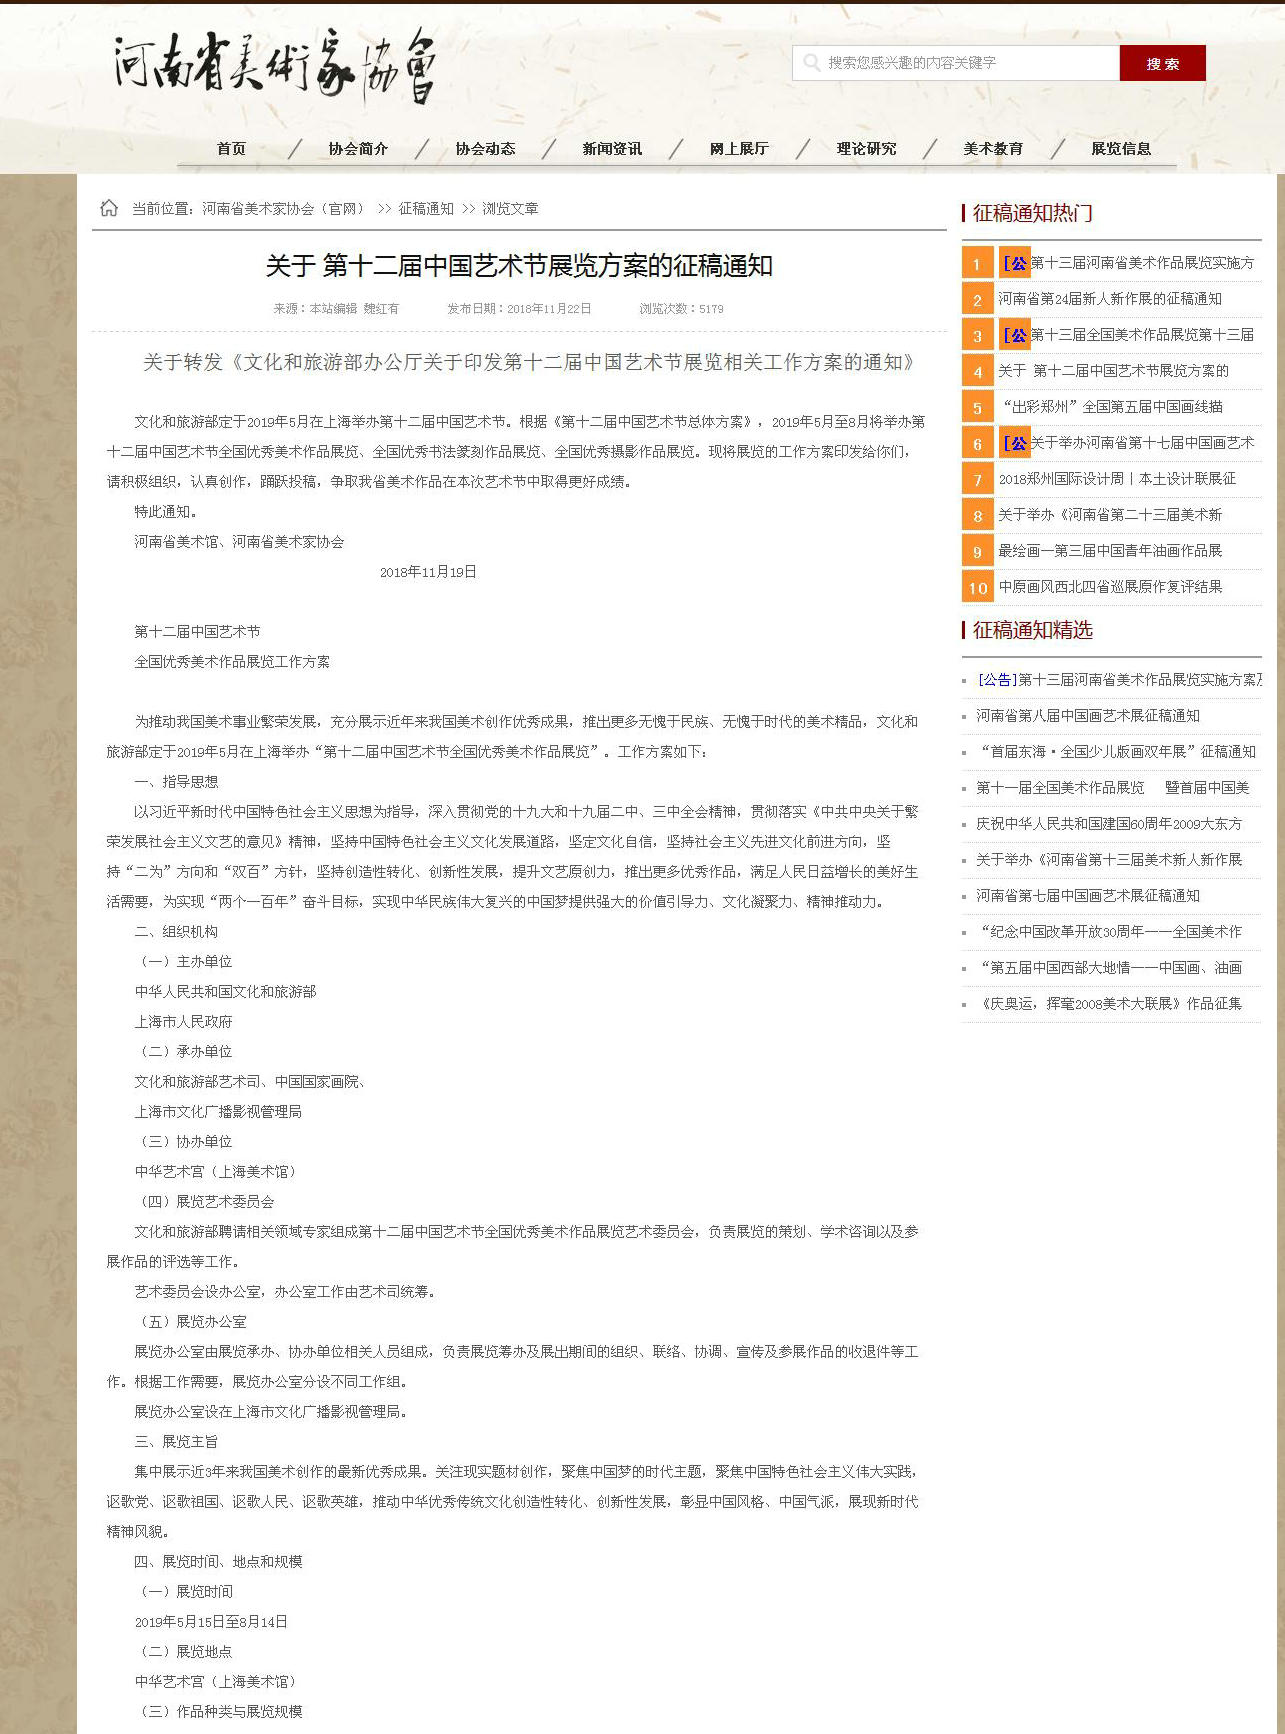 关于 第十二届中国艺术节展览方案的征稿通知_副本.jpg